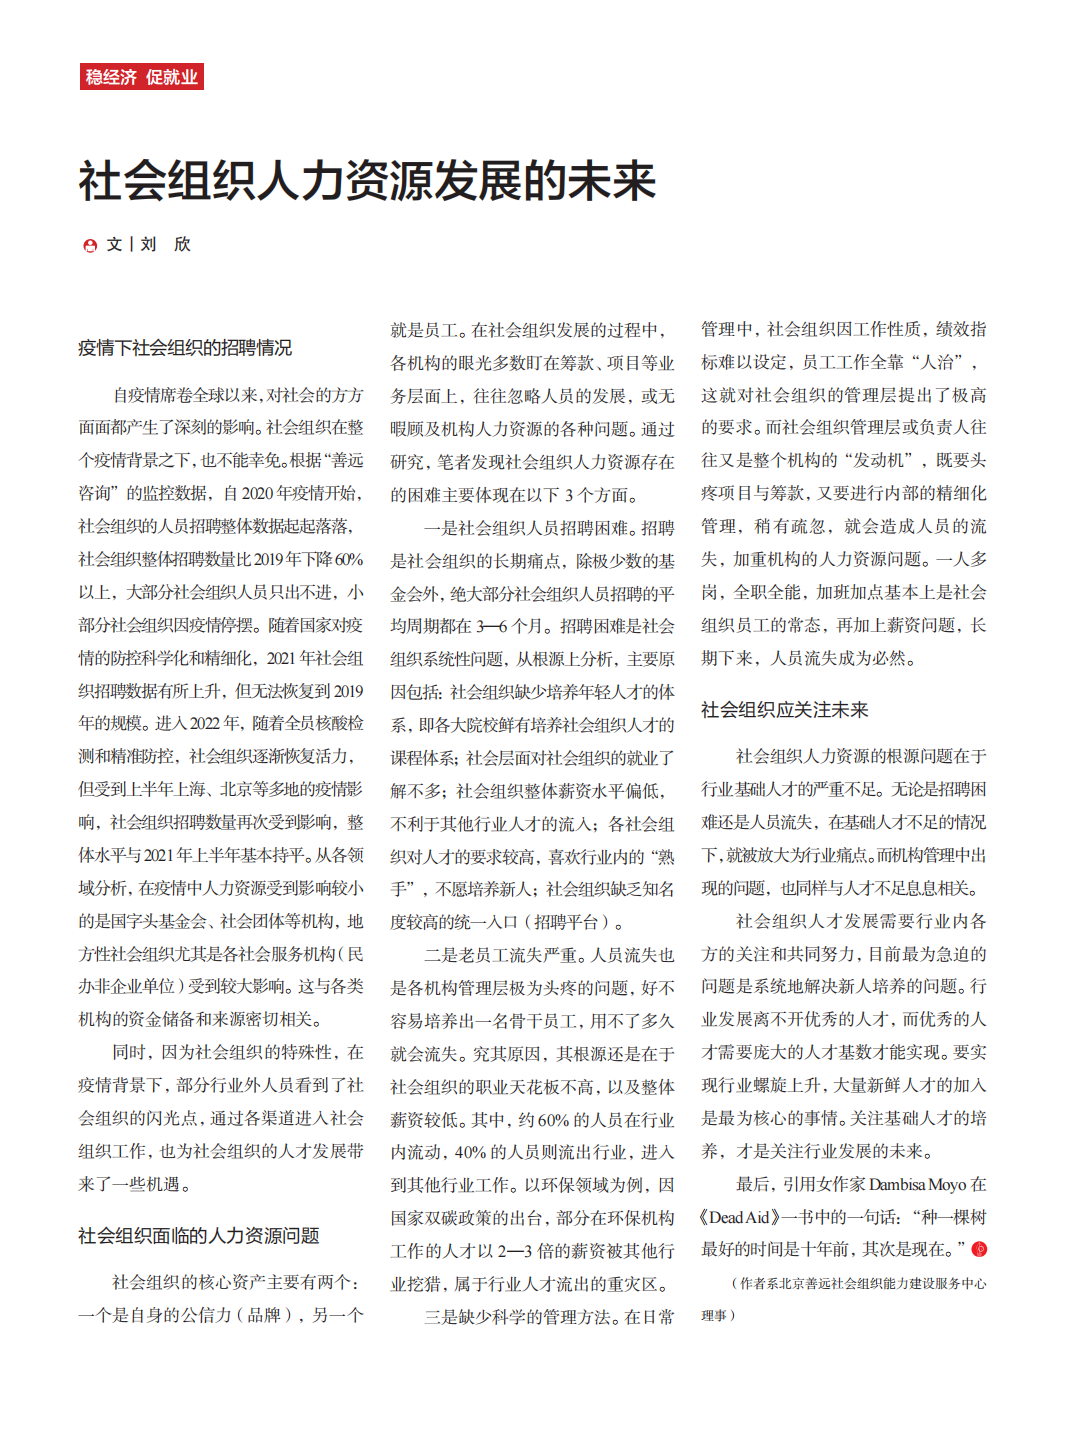 《北京社会组织》杂志2022年第4期_28.png